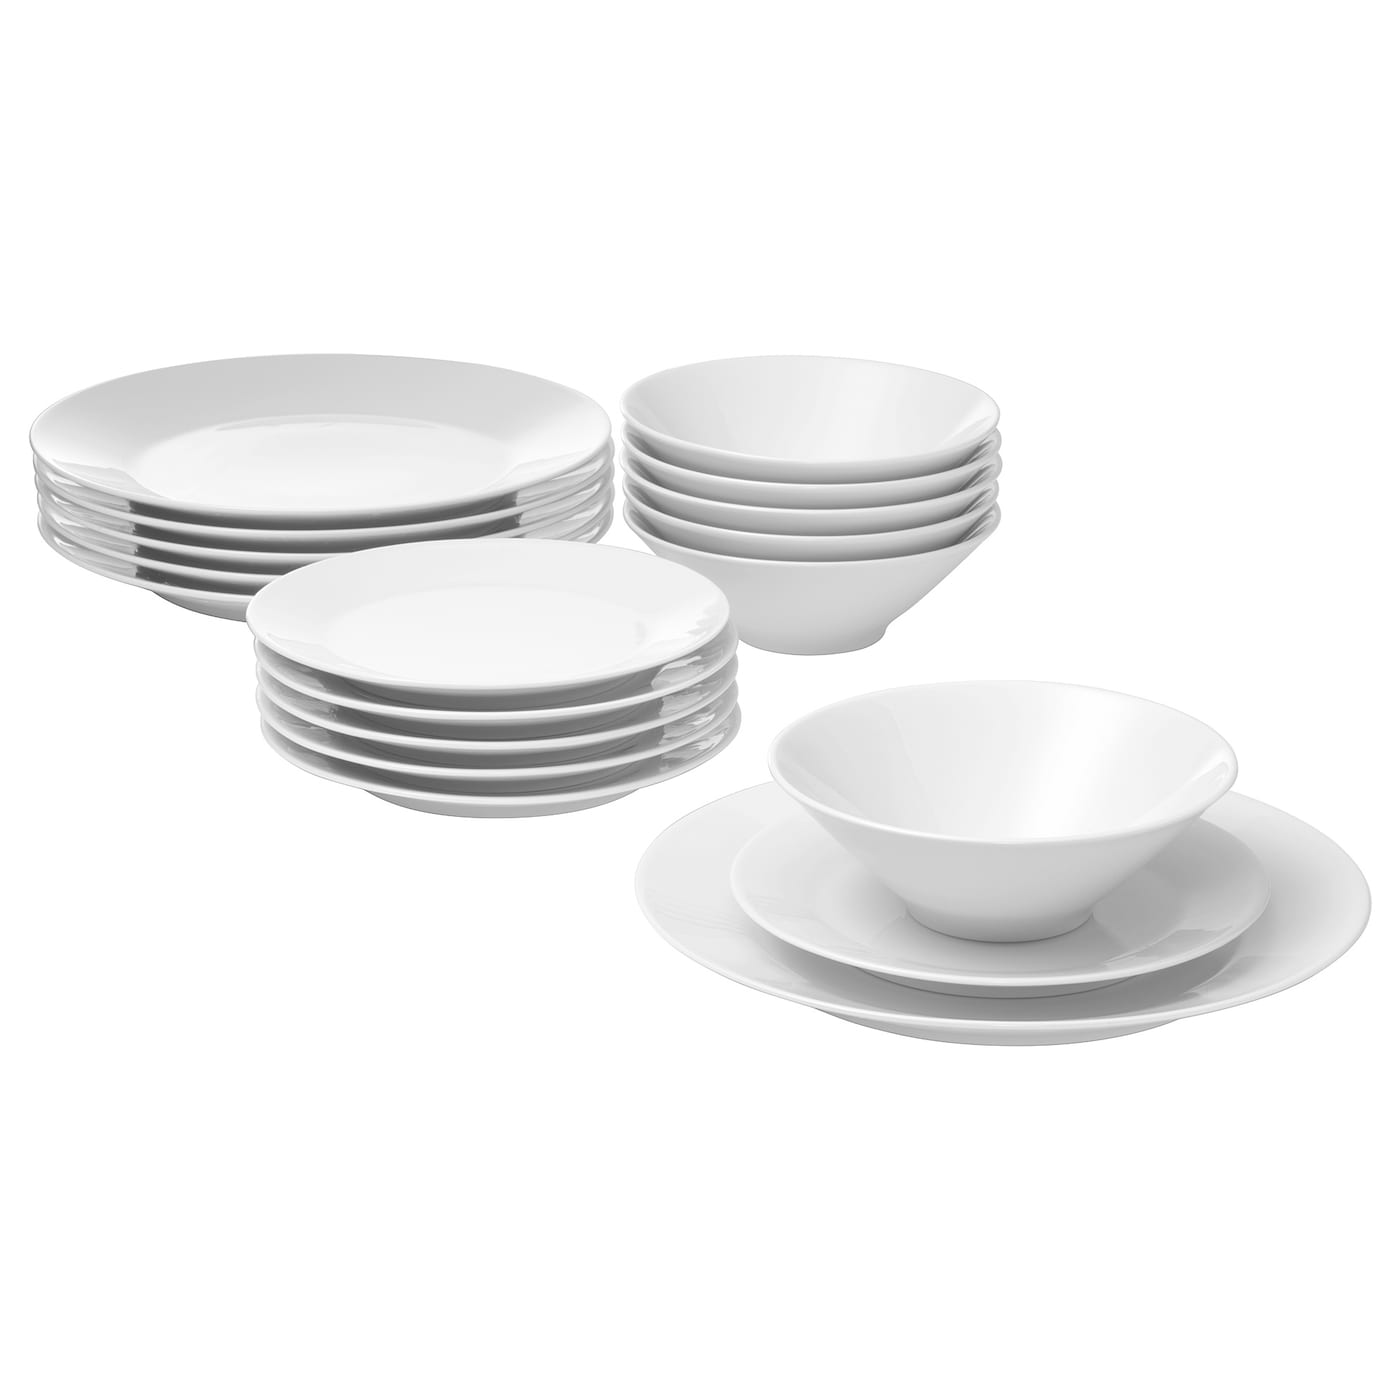 Набор посуды, 18 шт. - IKEA 365+, белый, ИКЕА 365+